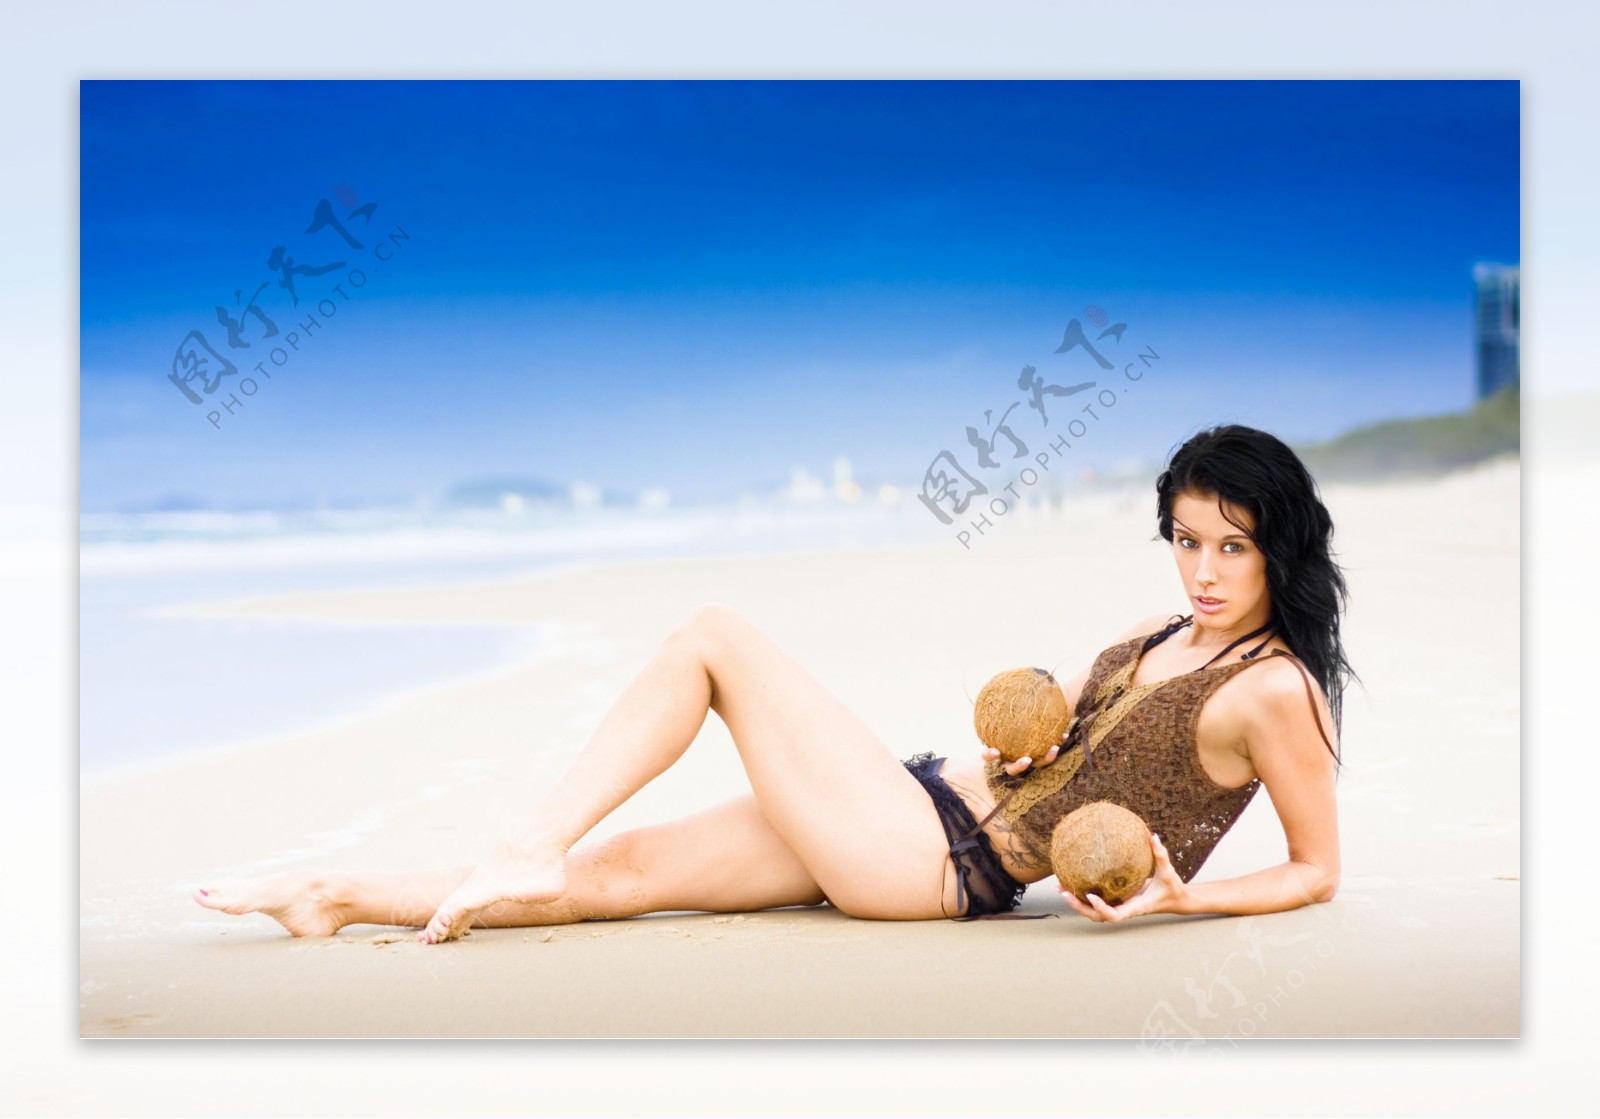 躺在沙滩上拿着椰果的外国美女图片